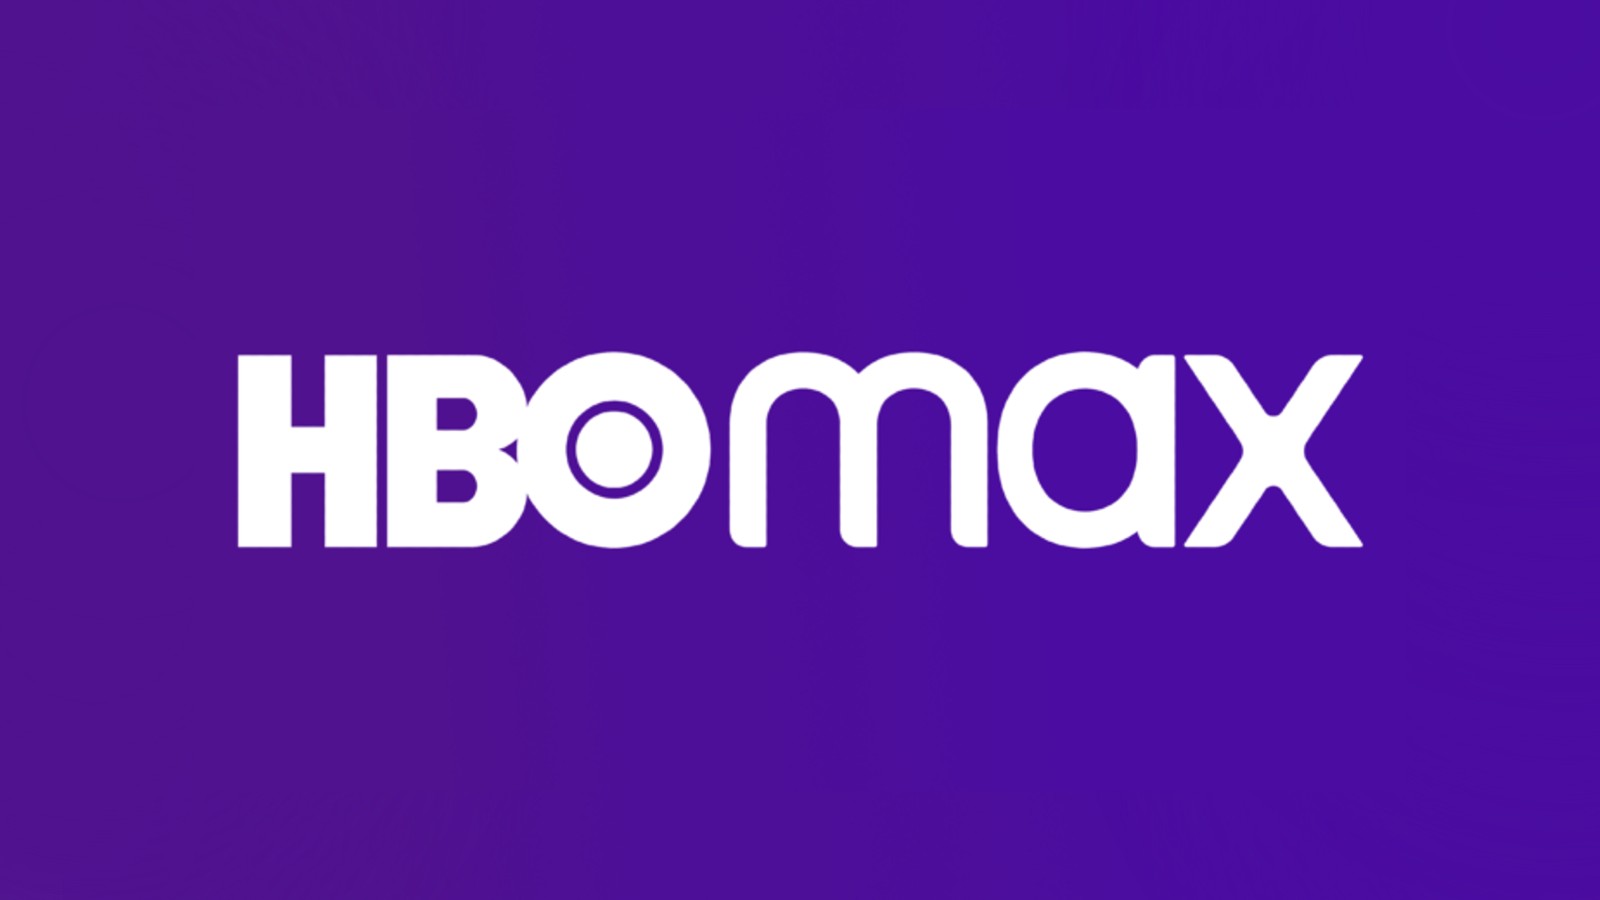 HBO max logo